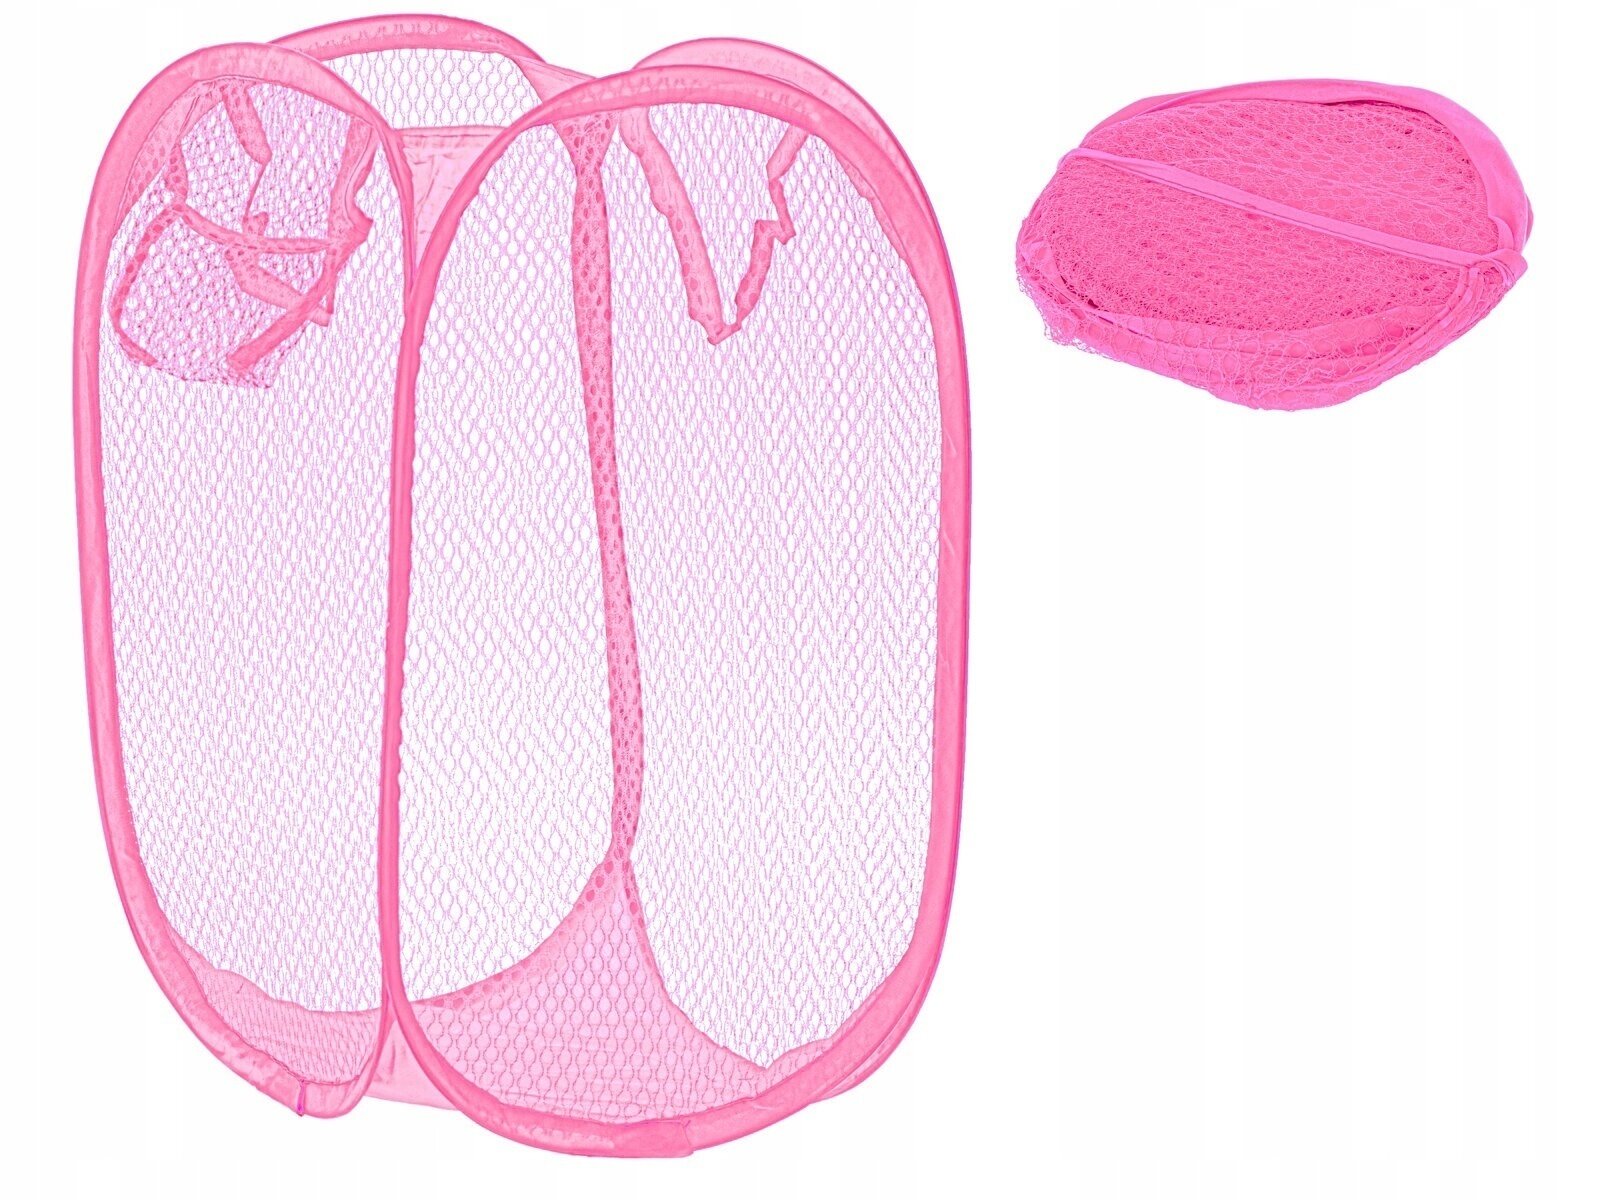 Мешок складной, универсальная корзина, складная сетка для белья и игрушек, розовый